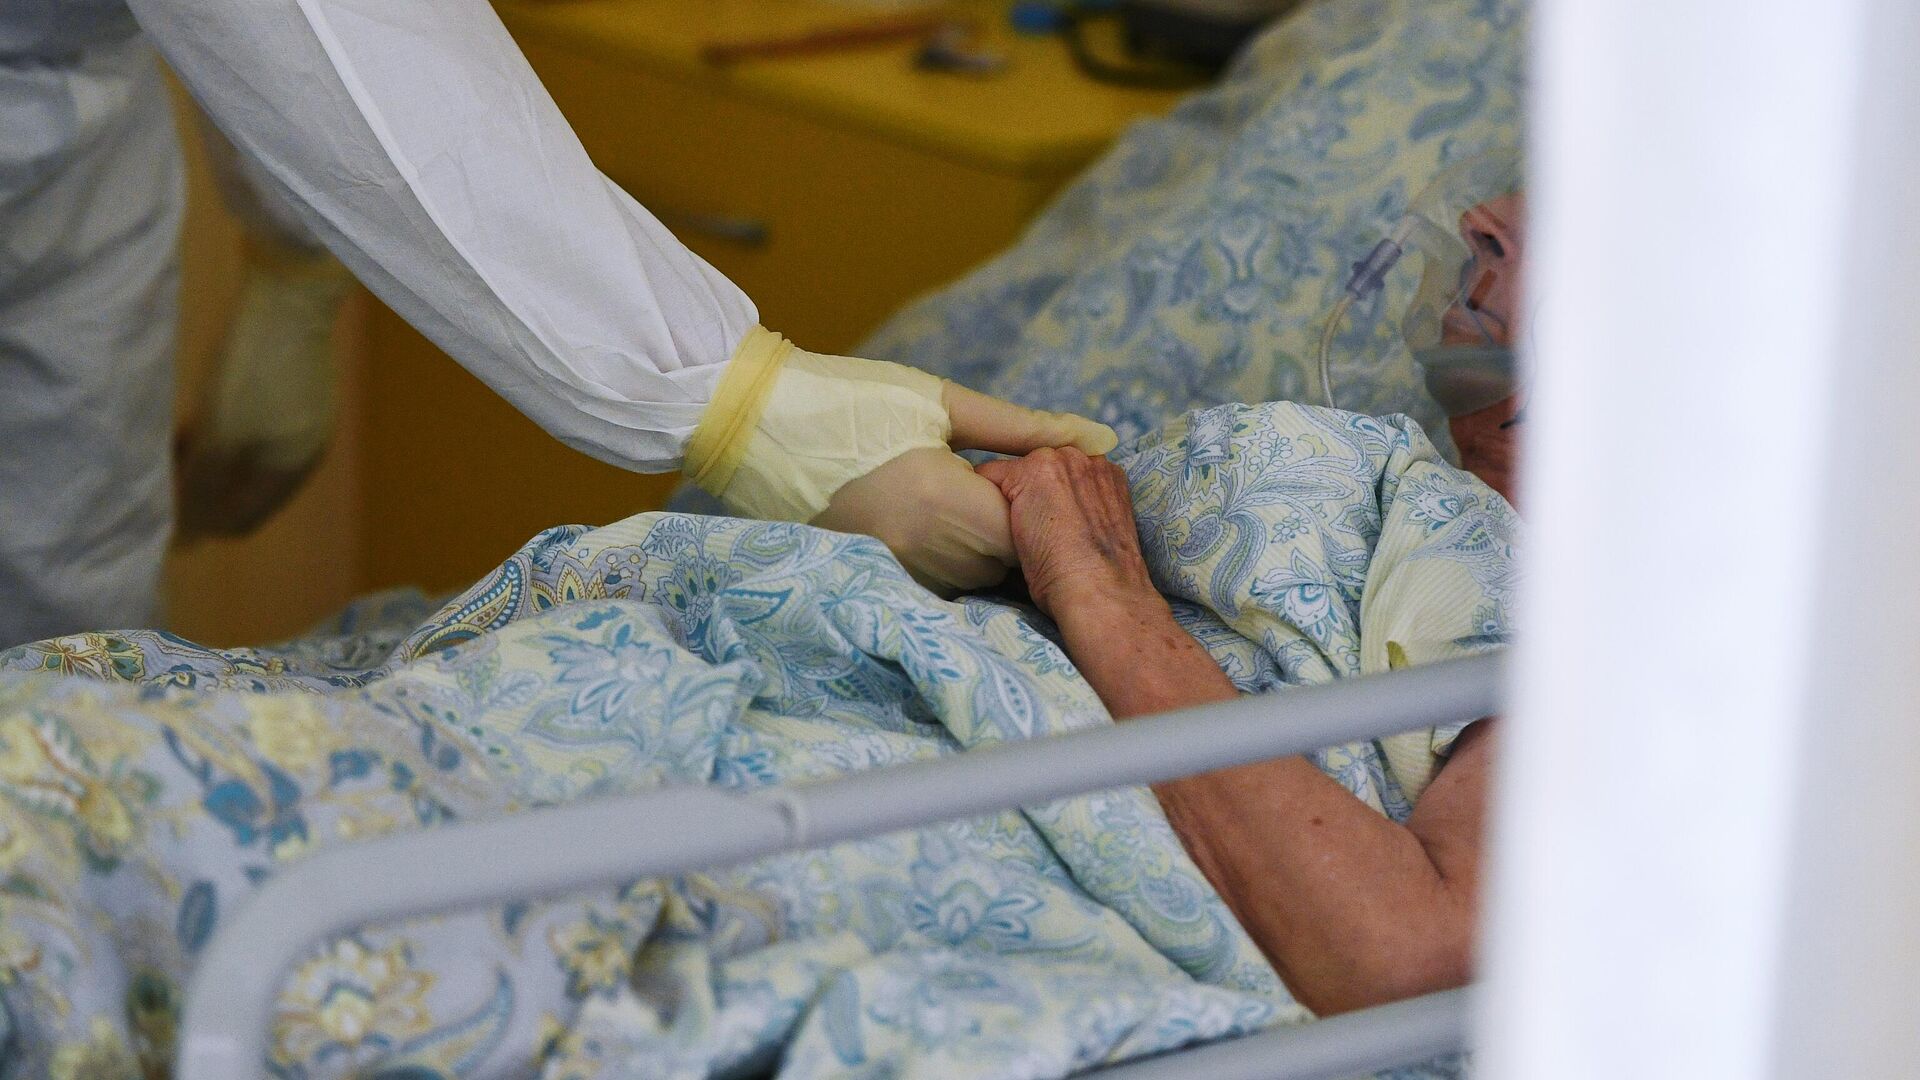 Медицинский работник возле кровати пациента в одном из отделений госпиталя COVID-19 в Центре мозга и нейротехнологий ФМБА России - РИА Новости, 1920, 09.12.2021